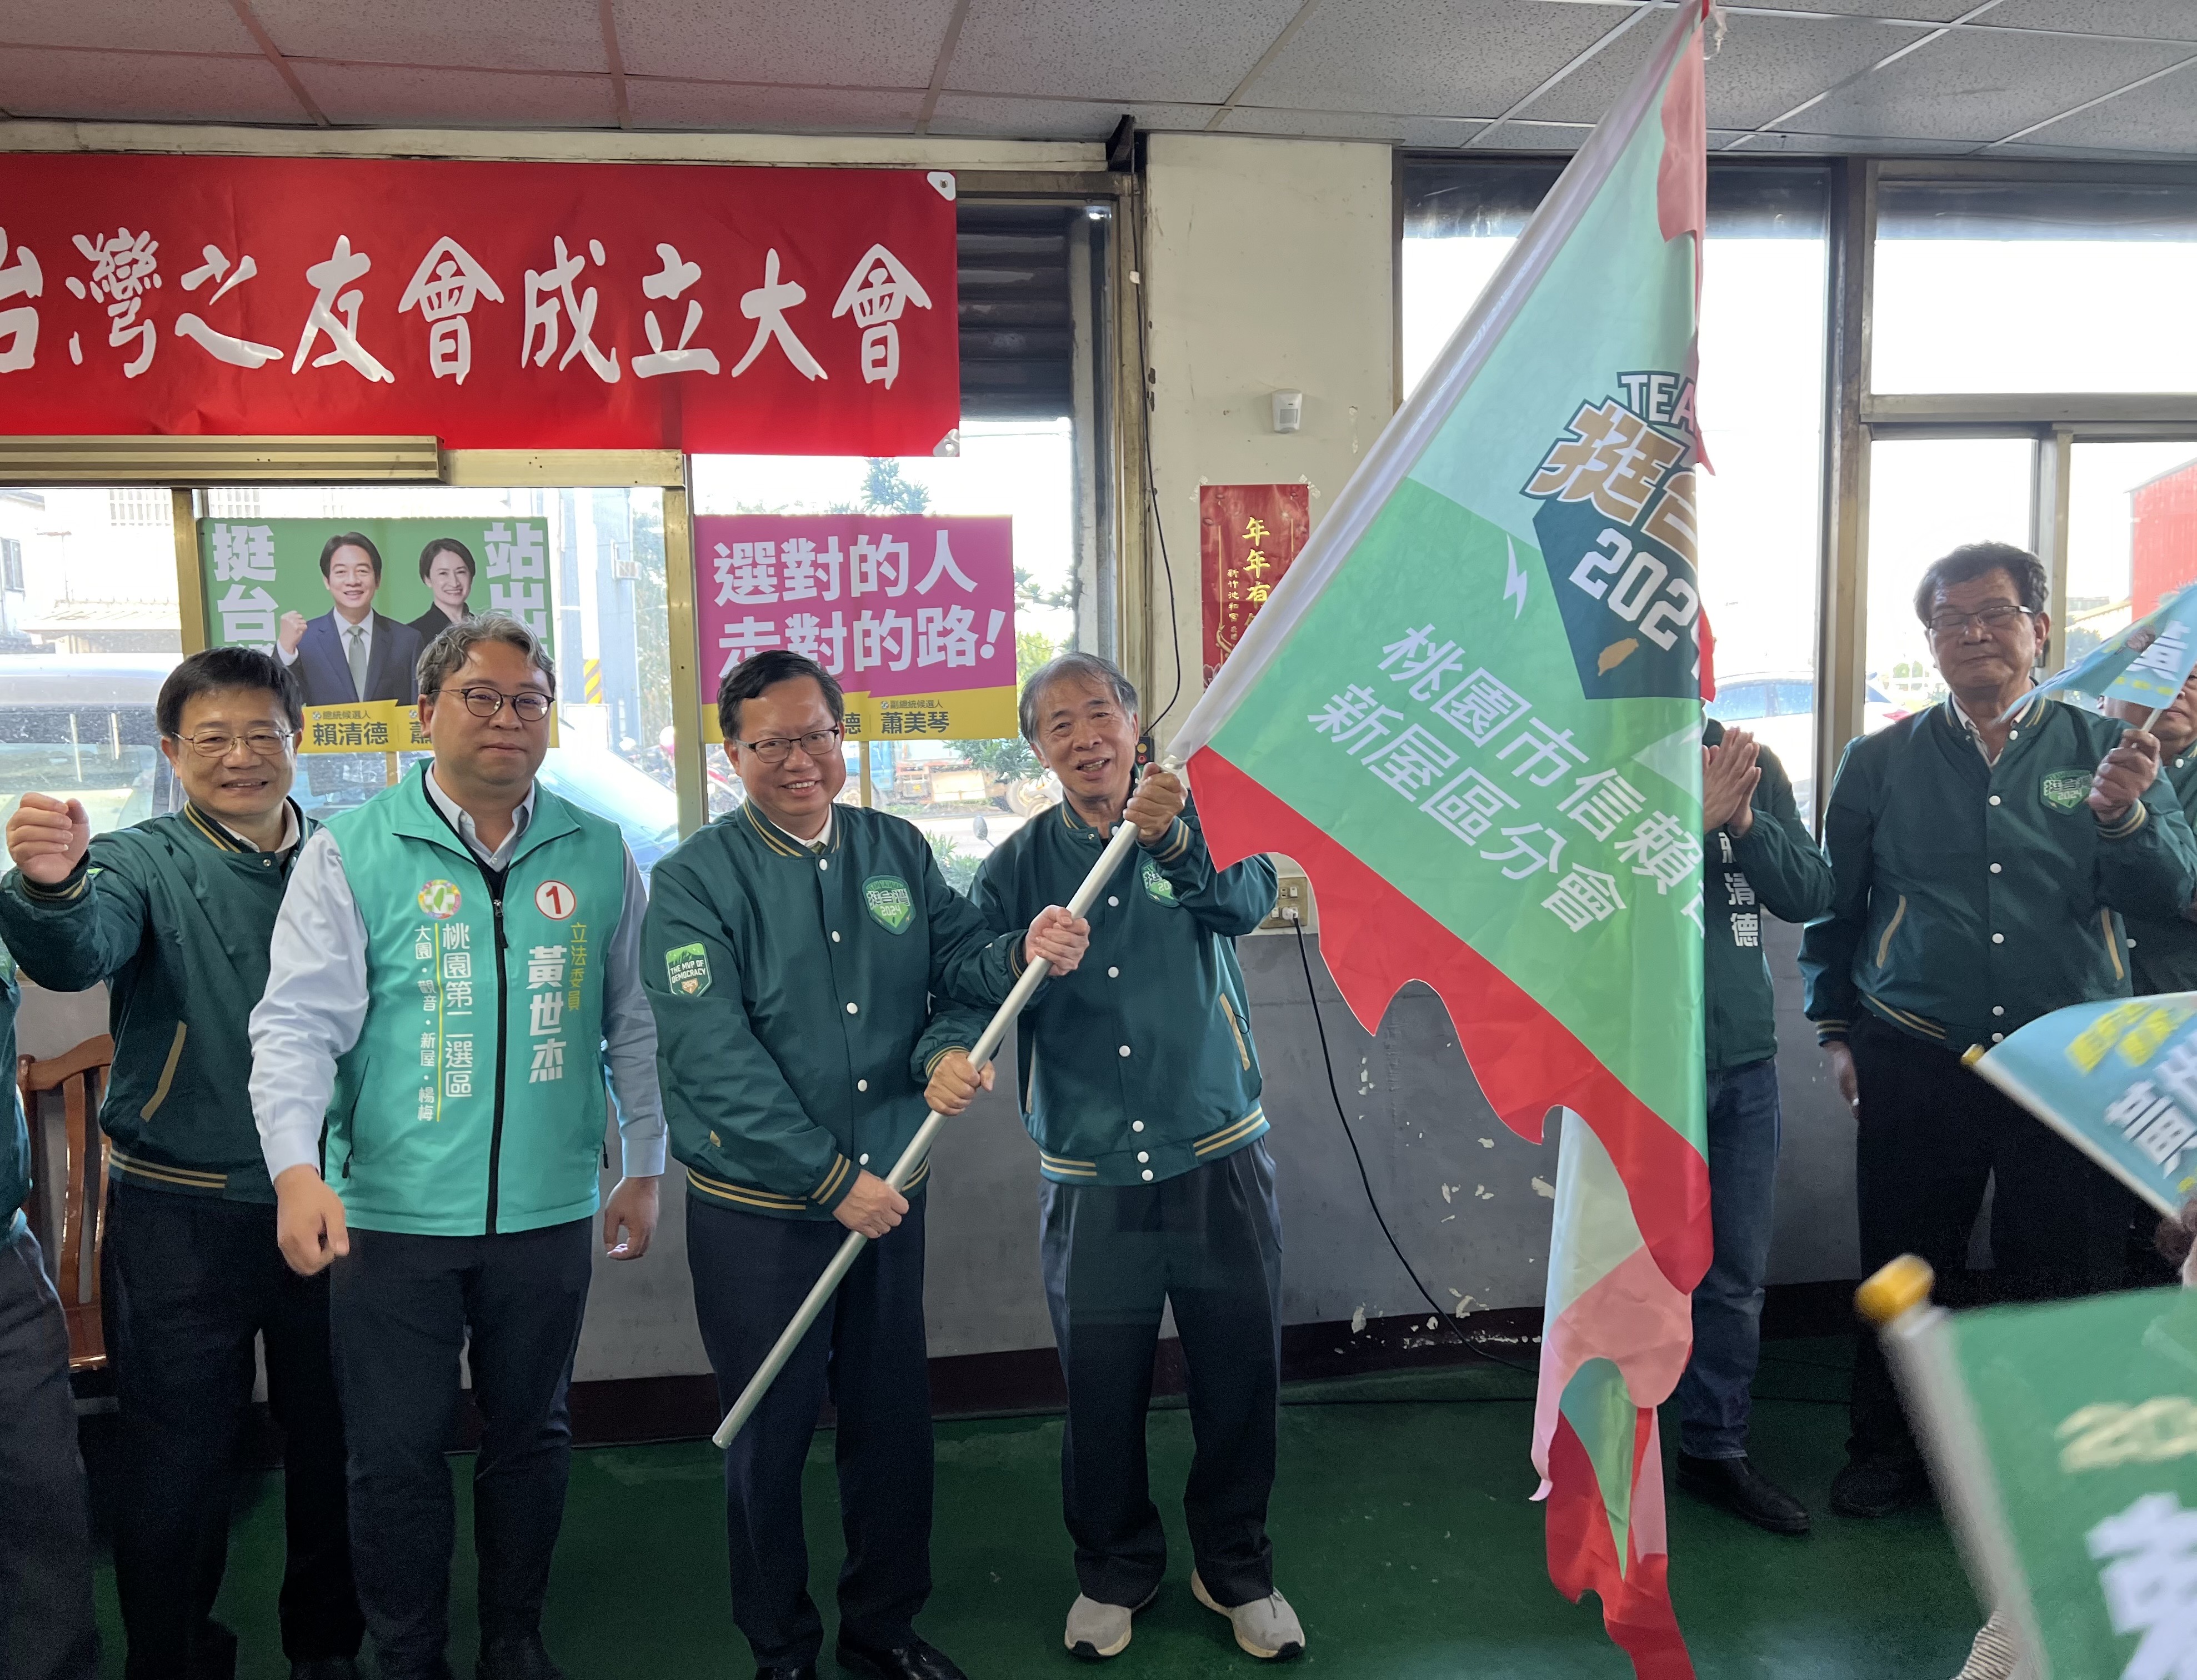 桃 園 市 信 賴 台 灣 之 友 會 新 屋 分 會 成 立 授 旗 。 